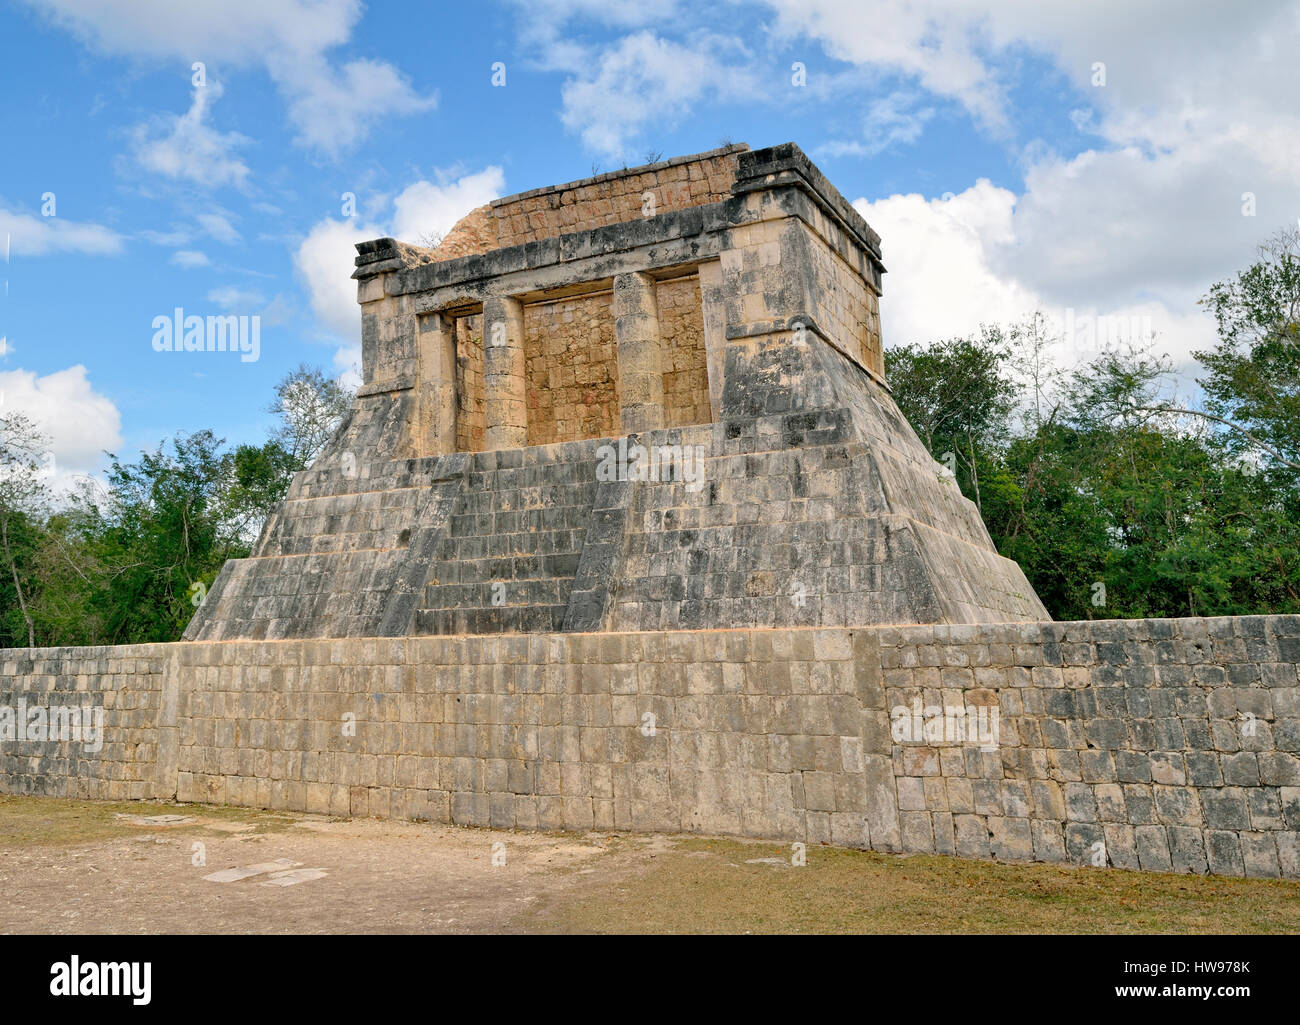 Templo del Hombre Barbado, Tempel des bärtigen Mannes, historischen Maya-Stadt Chichen Itza, Piste, Yucatan, Mexiko Stockfoto